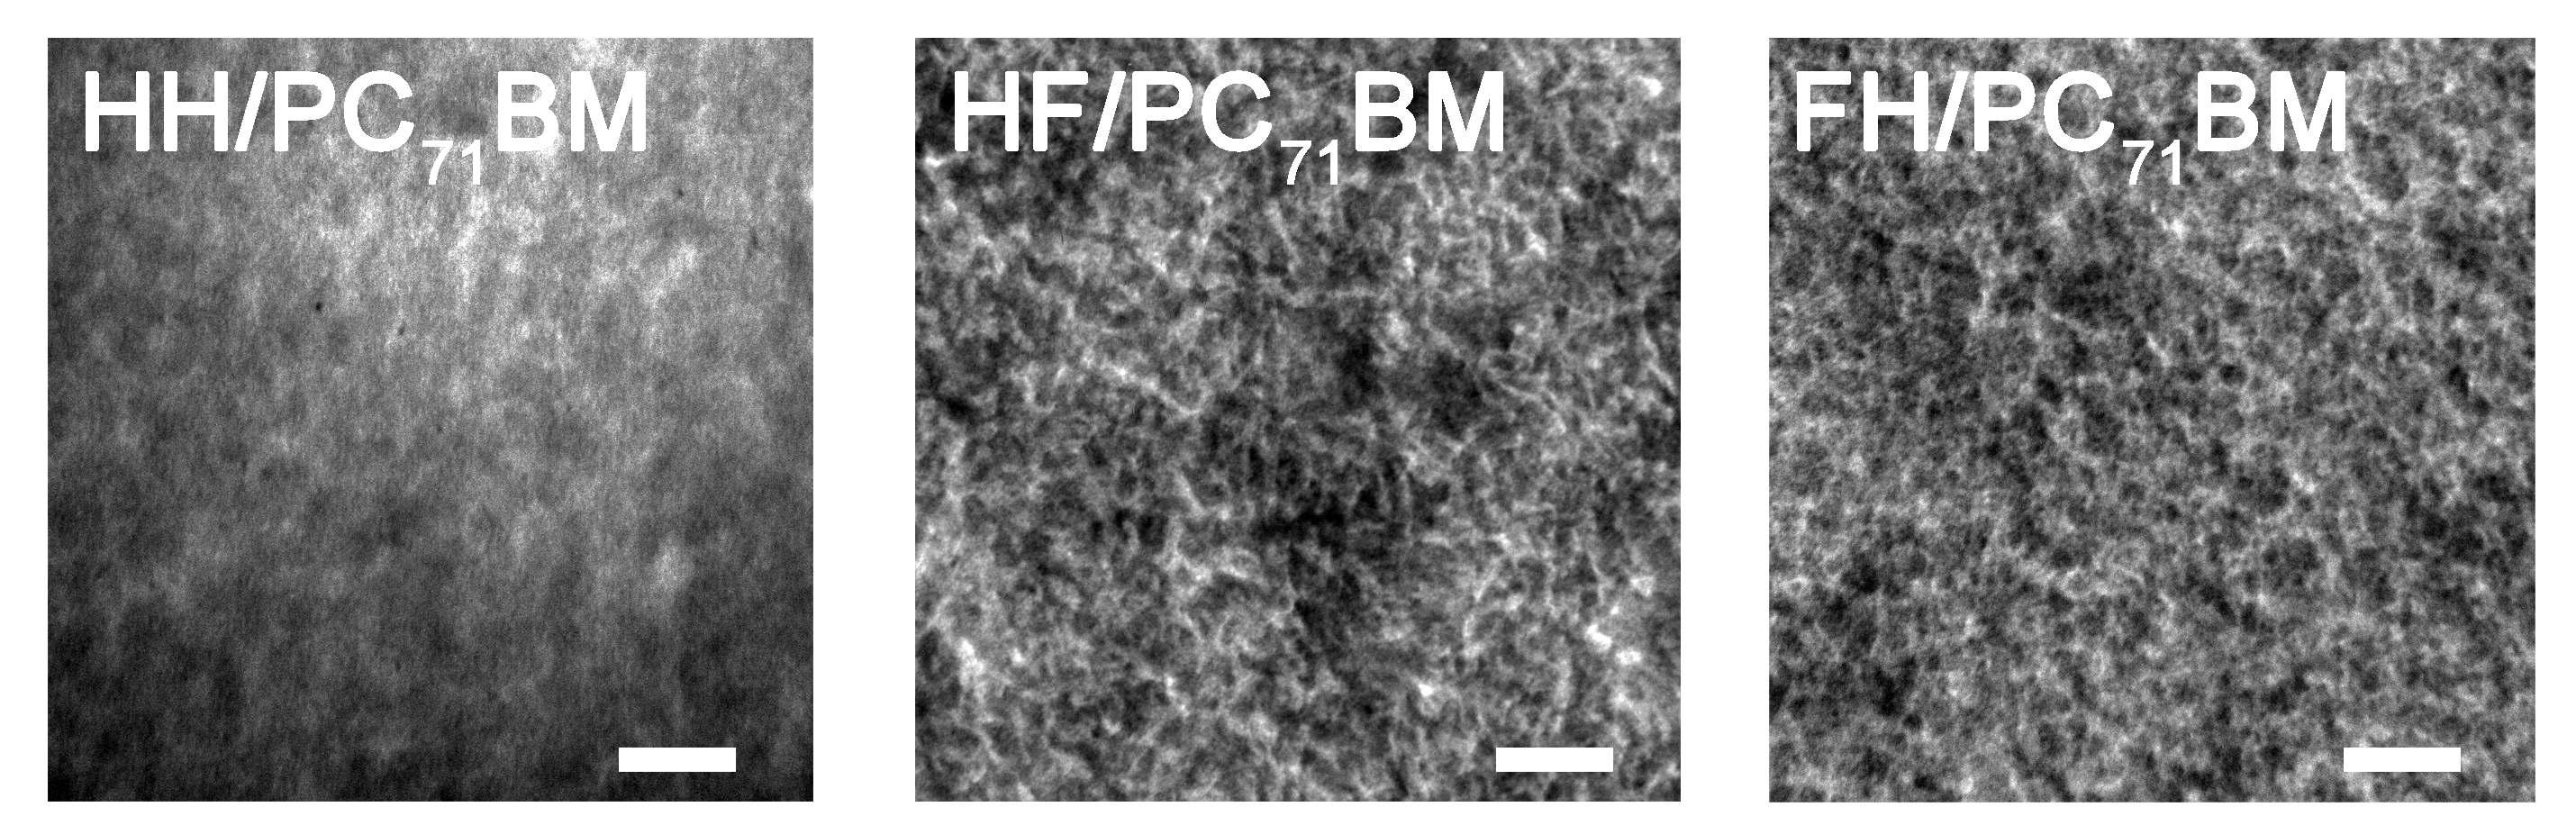 고분자/PC71BM 블렌드필름의 투과전자현미경 사진 이미지(scale bar: 200 nm).